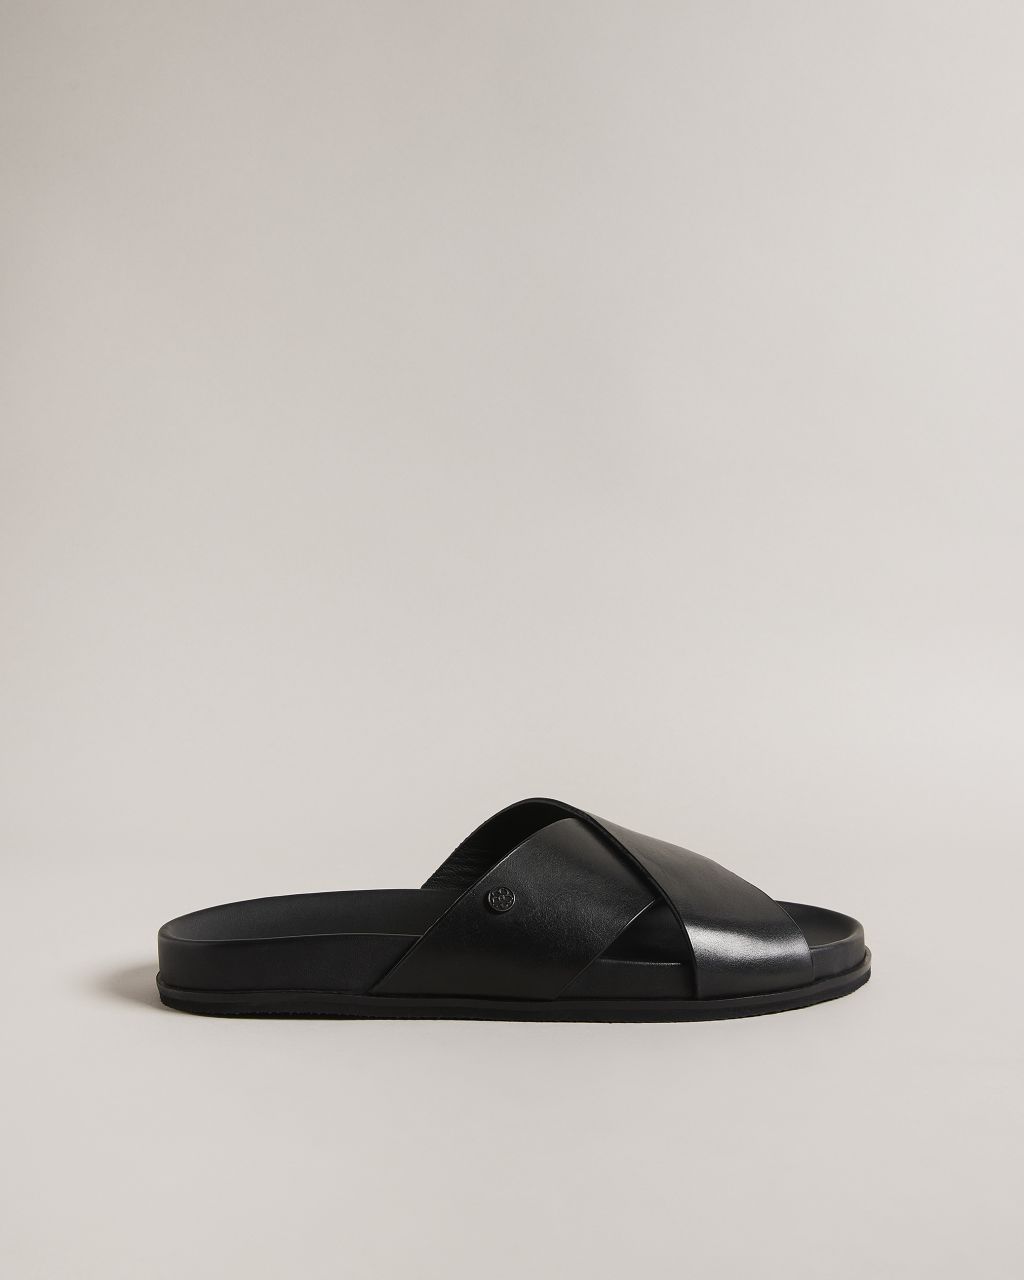 Ted Baker Men's Leather Sandals in Black, Oscarr